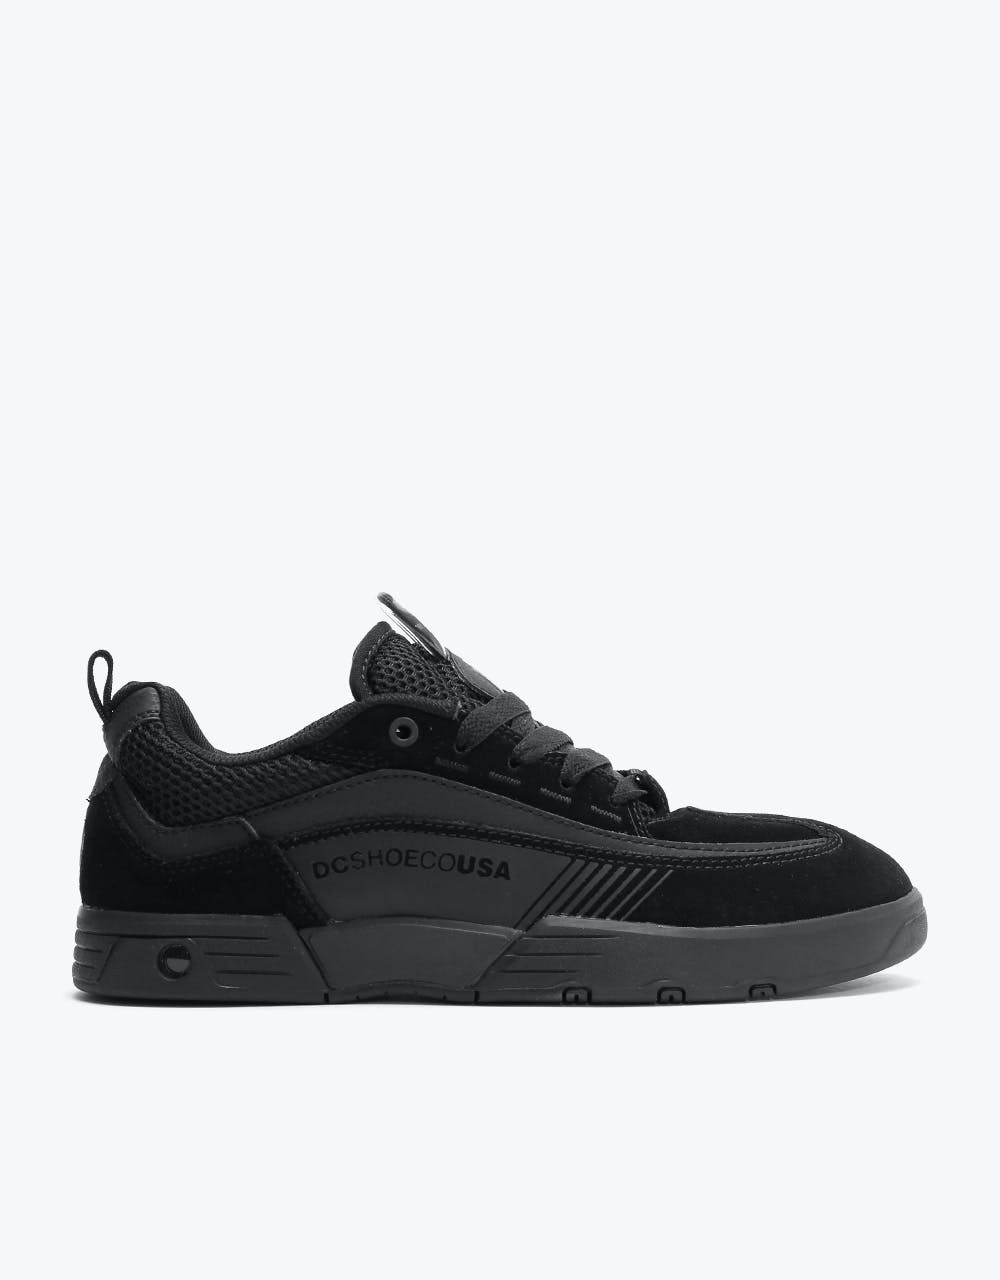 DC Legacy 98 Slim Skate Shoes - Black